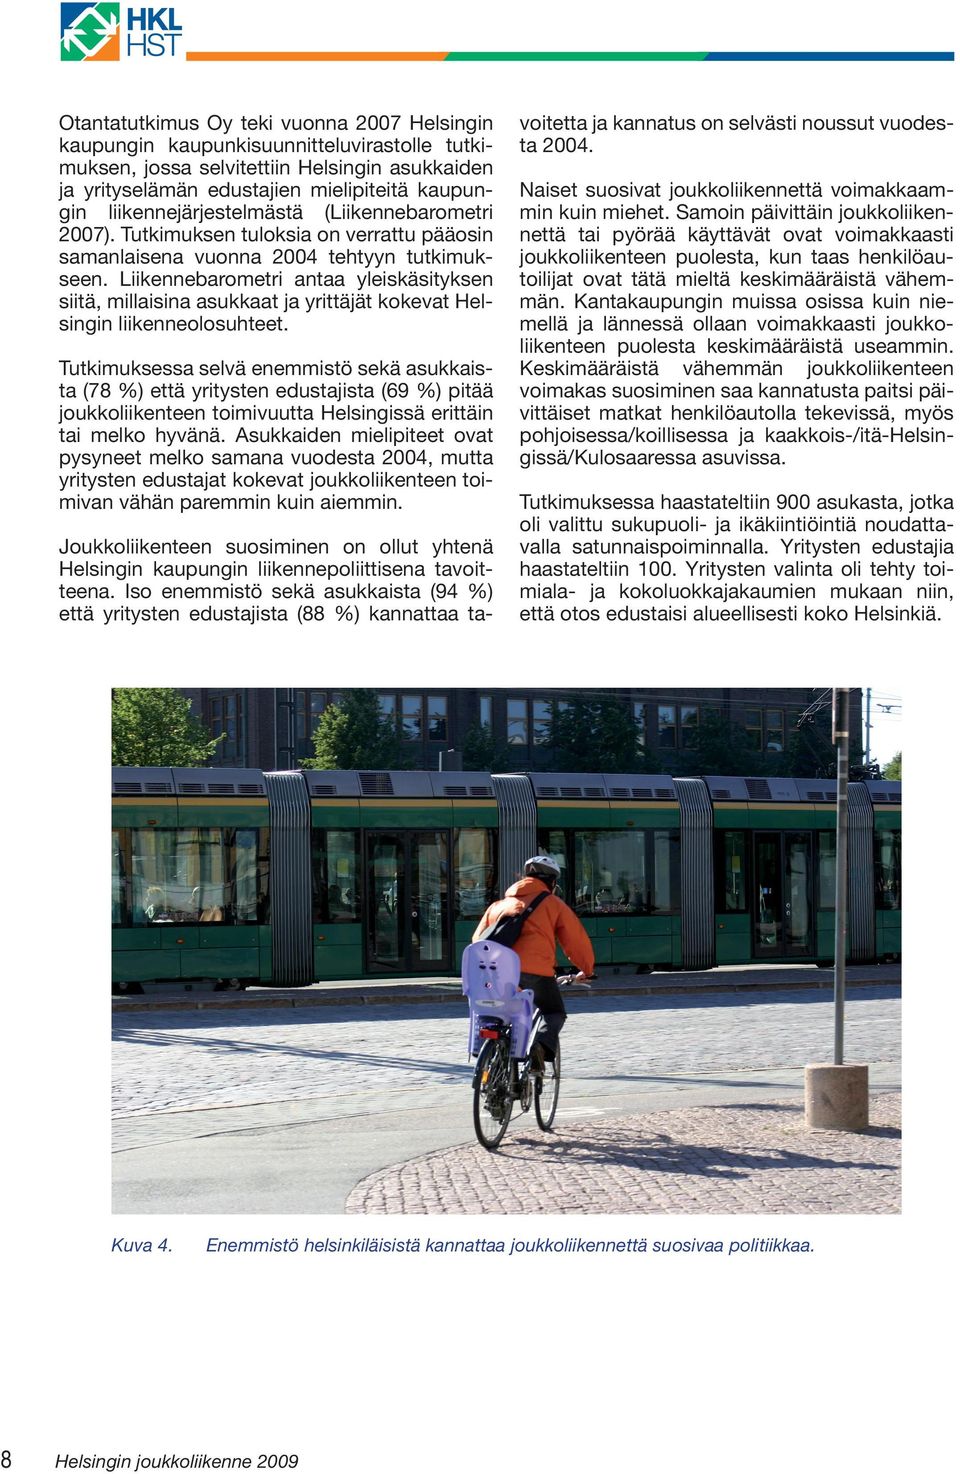 Liikennebarometri antaa yleiskäsityksen siitä, millaisina asukkaat ja yrittäjät kokevat Helsingin liikenneolosuhteet.